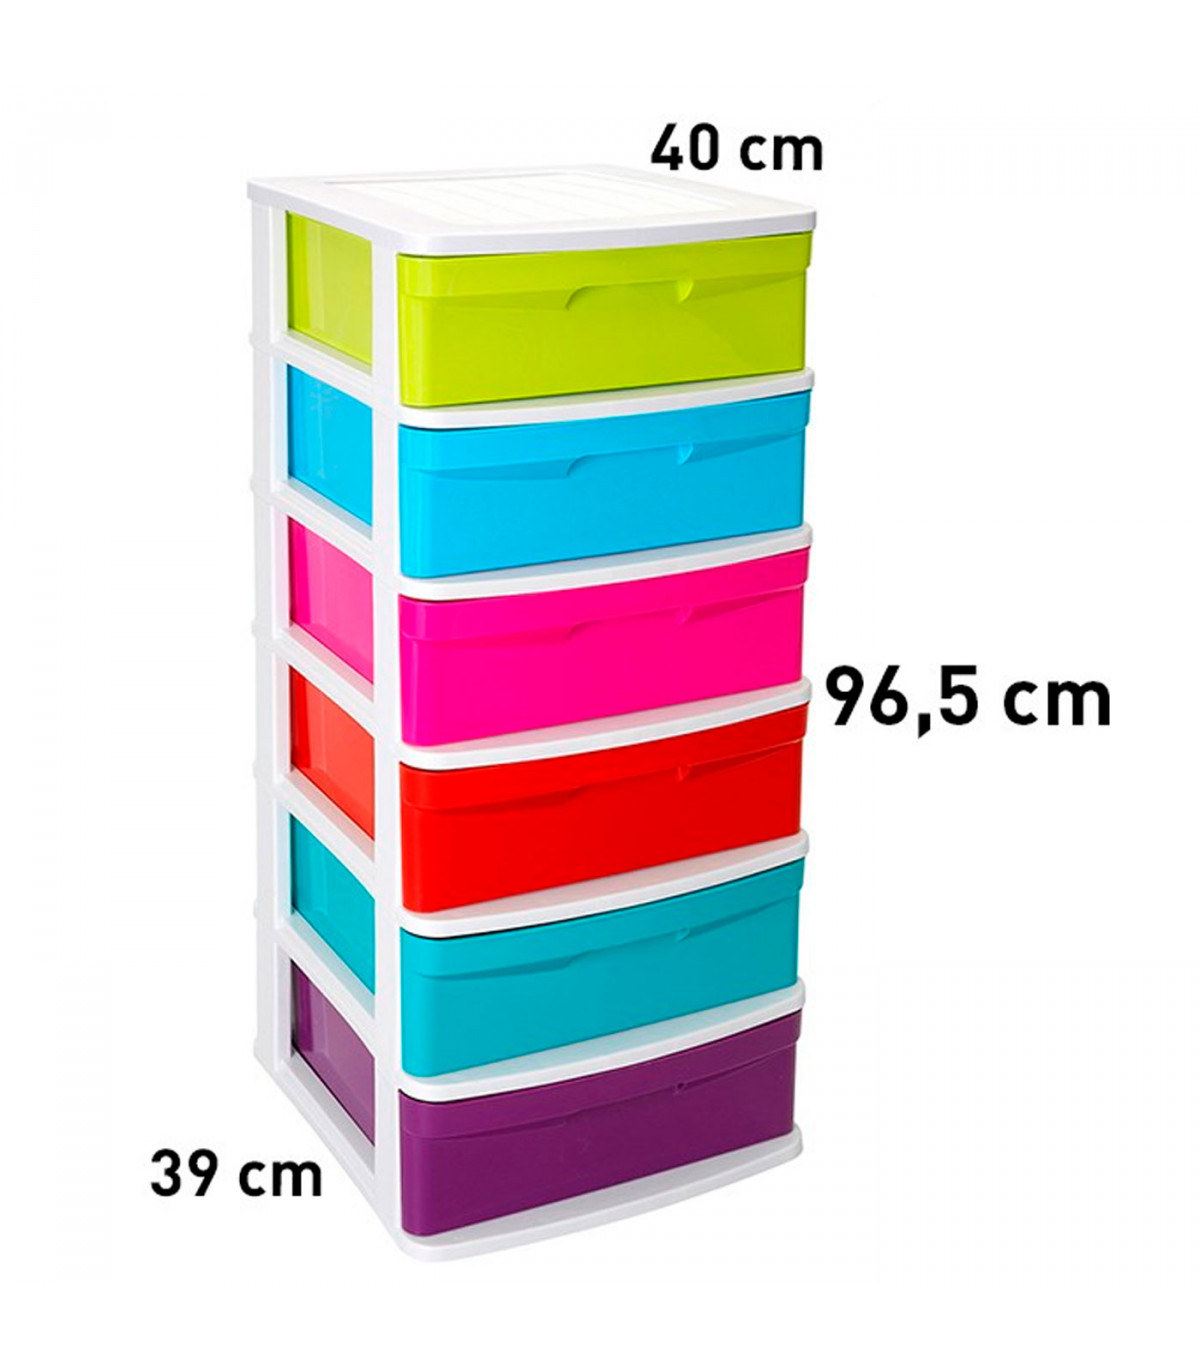 Tradineur - Cajonera de almacenaje modelo Sena, 6 cajones multicolor,  plástico, torre de ordenación multiusos, hogar (Blanco, 96